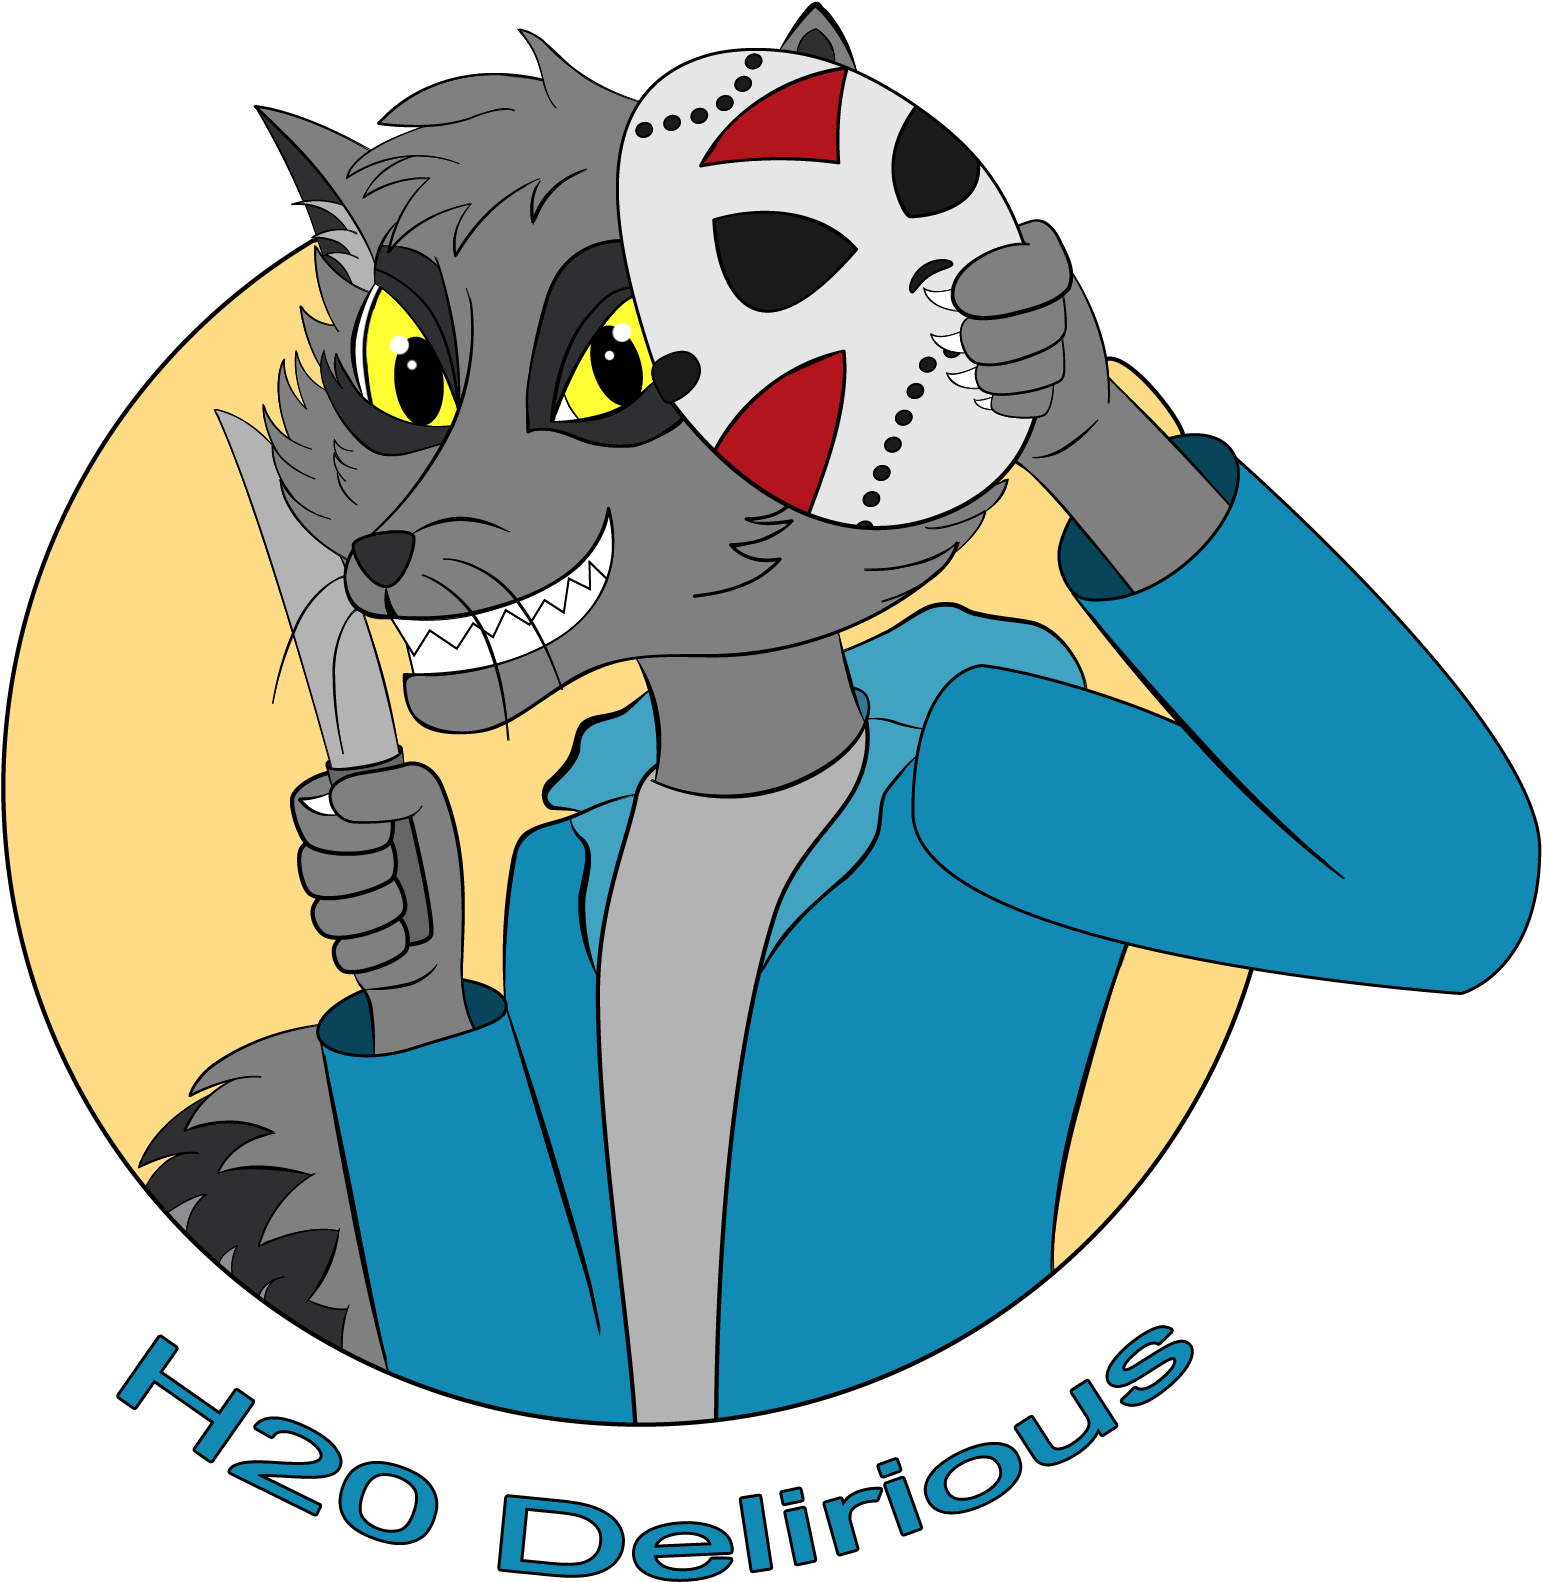 H20 Delirious - H2o Delirious (1980x2132)